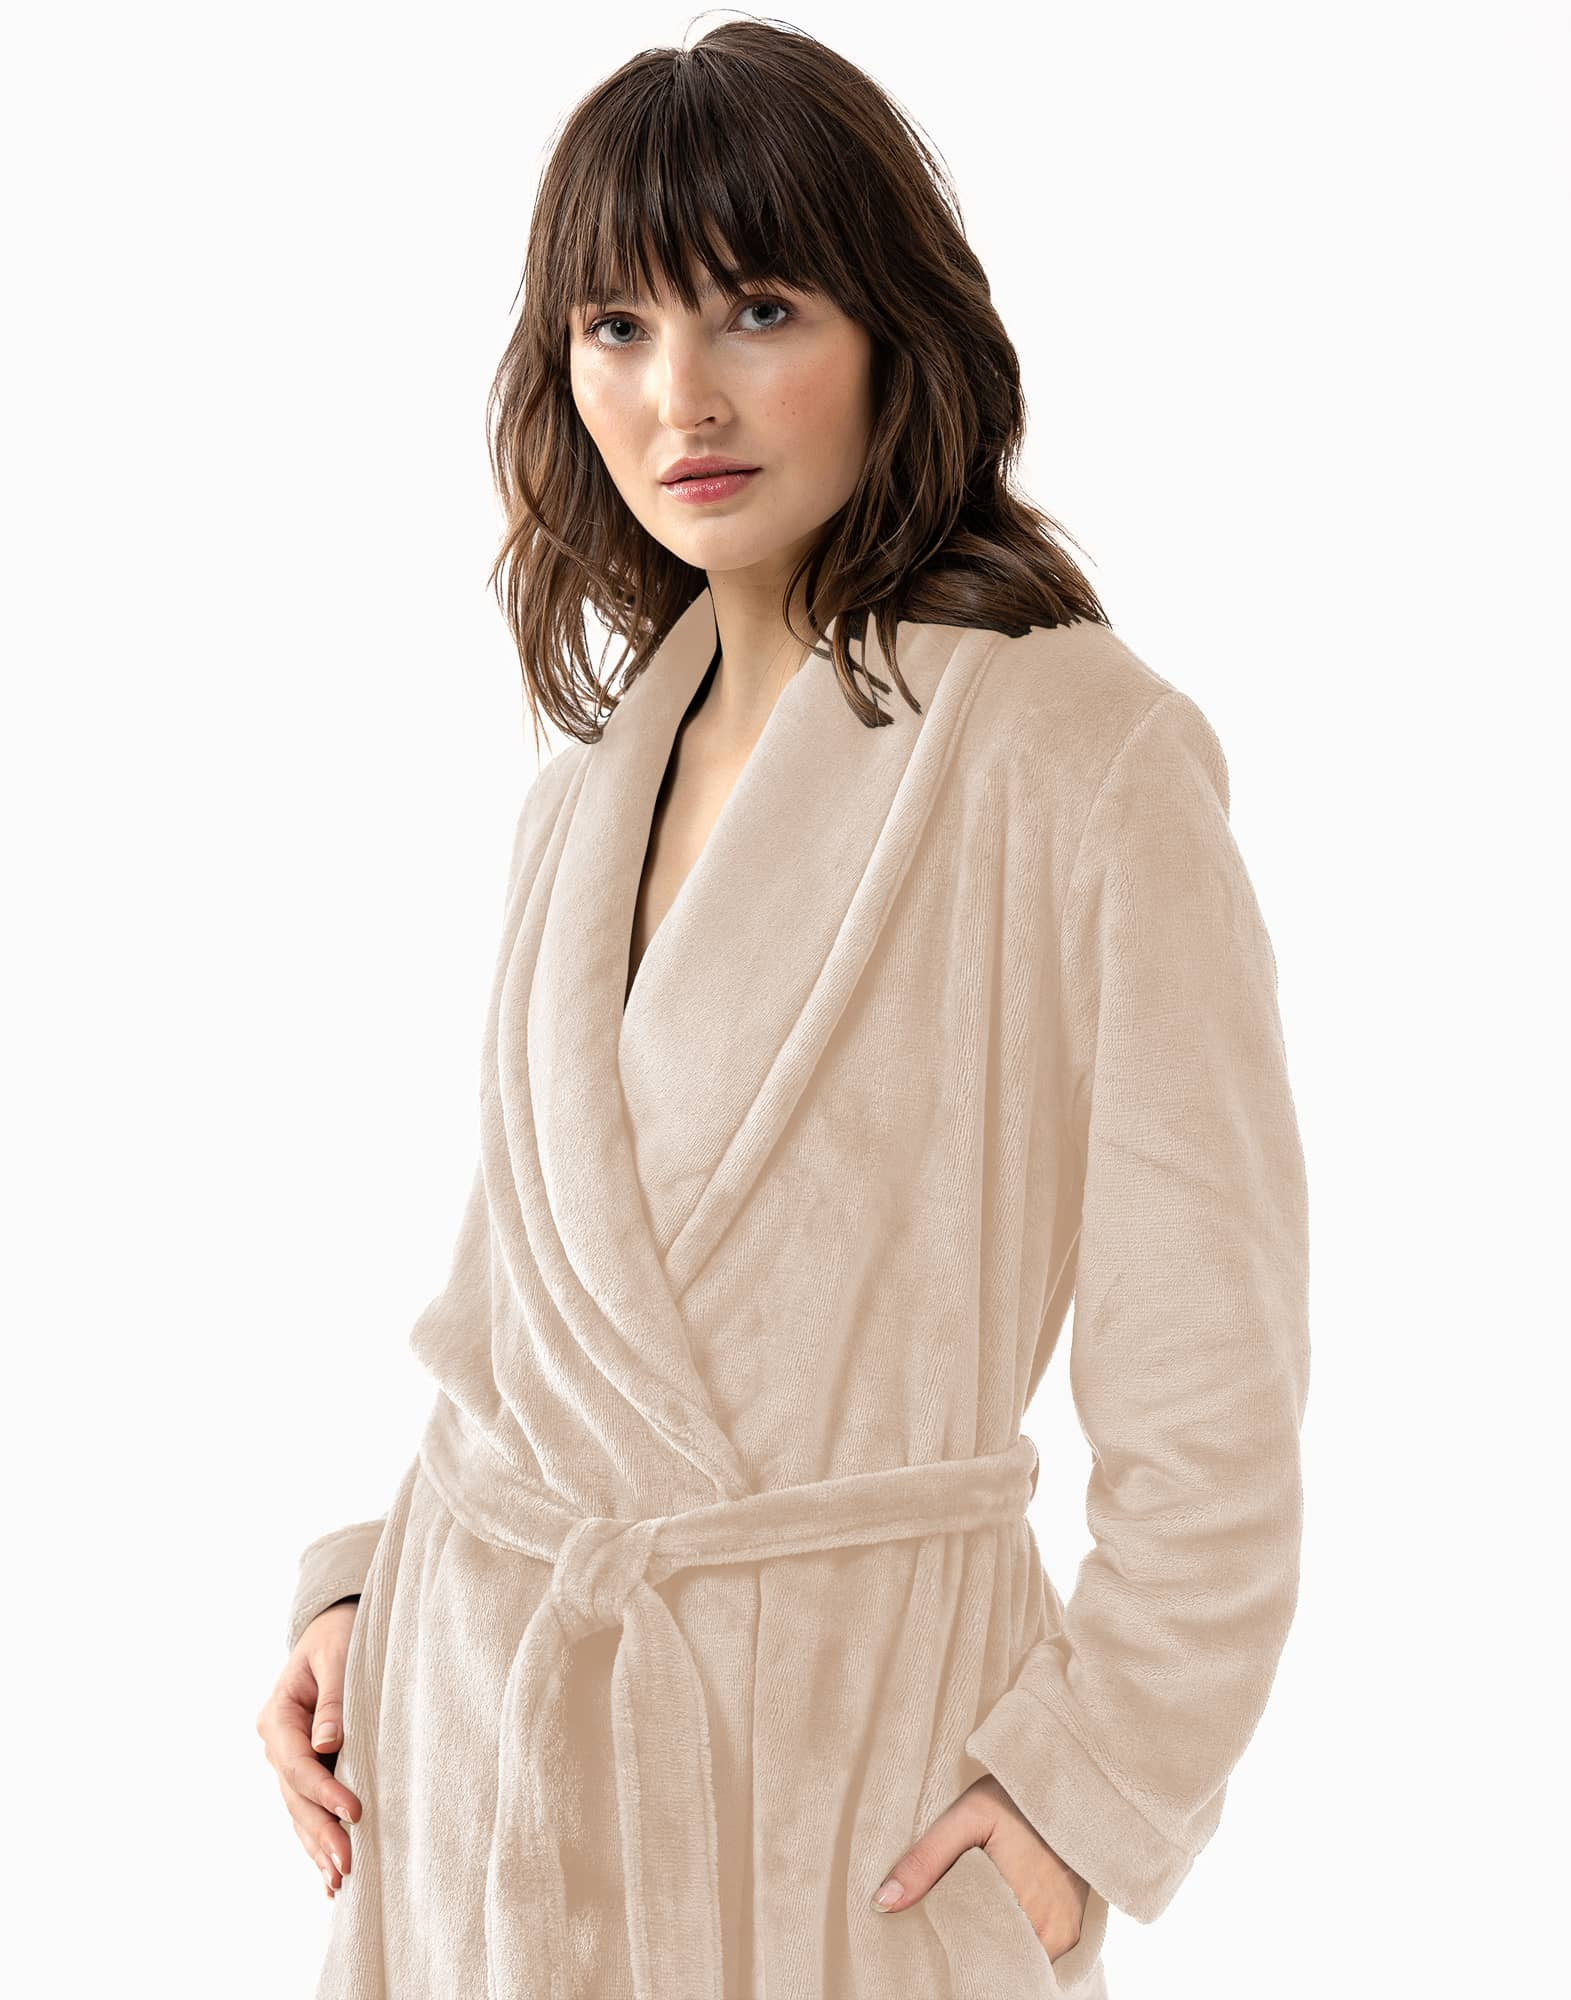 Plush flannel twill bathrobe ESSENTIEL 661 in shell